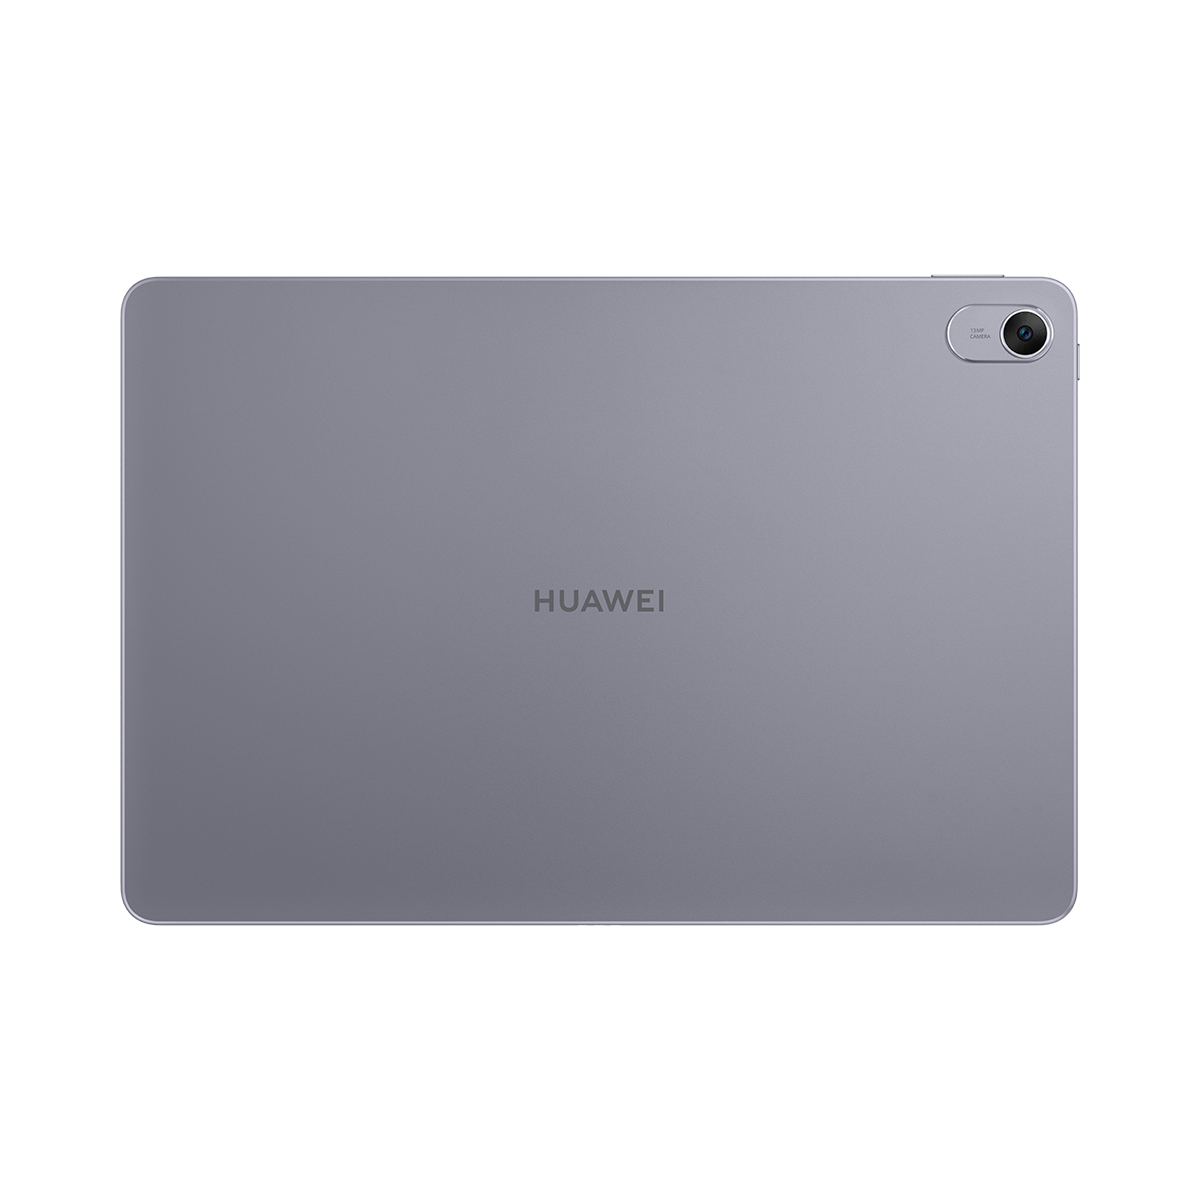 HUAWEI MatePad 11.5 tablet, HUAWEI Türkiye Online Mağazası’nda ön satışa sunuldu